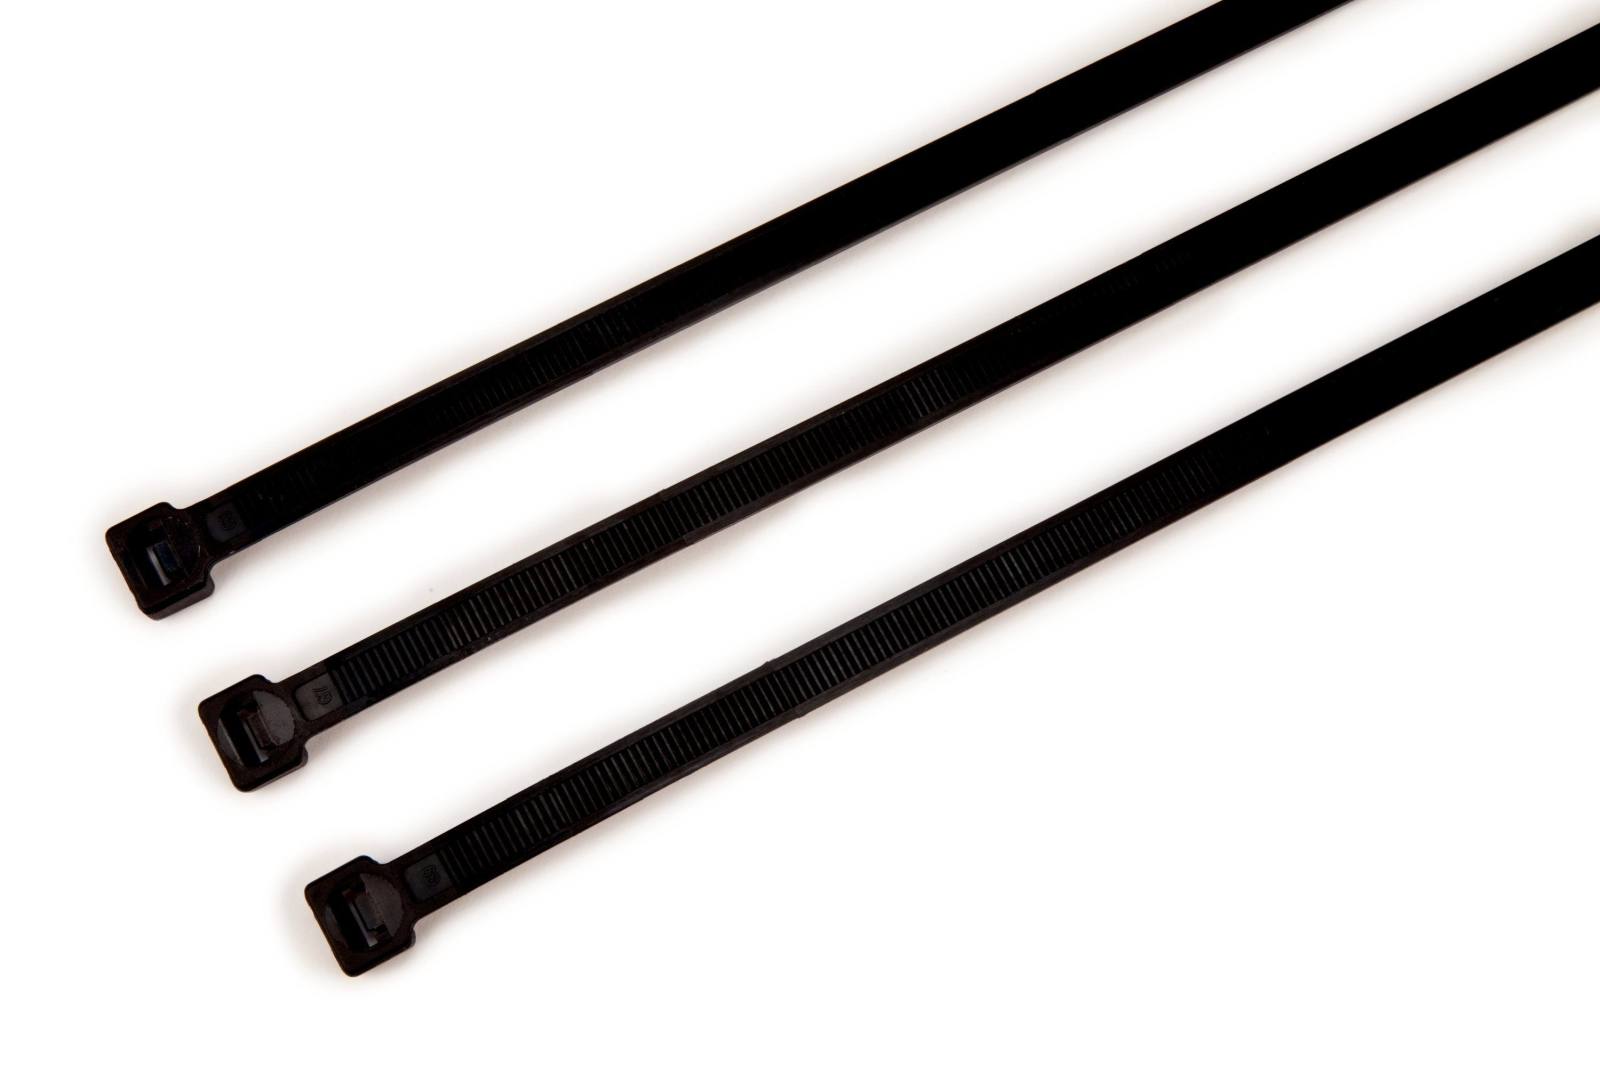 3M Scotchflex FS 280 BW-C cable tie, UV-resistant, black, 3.6 mm x 280 mm, pack=100 pieces